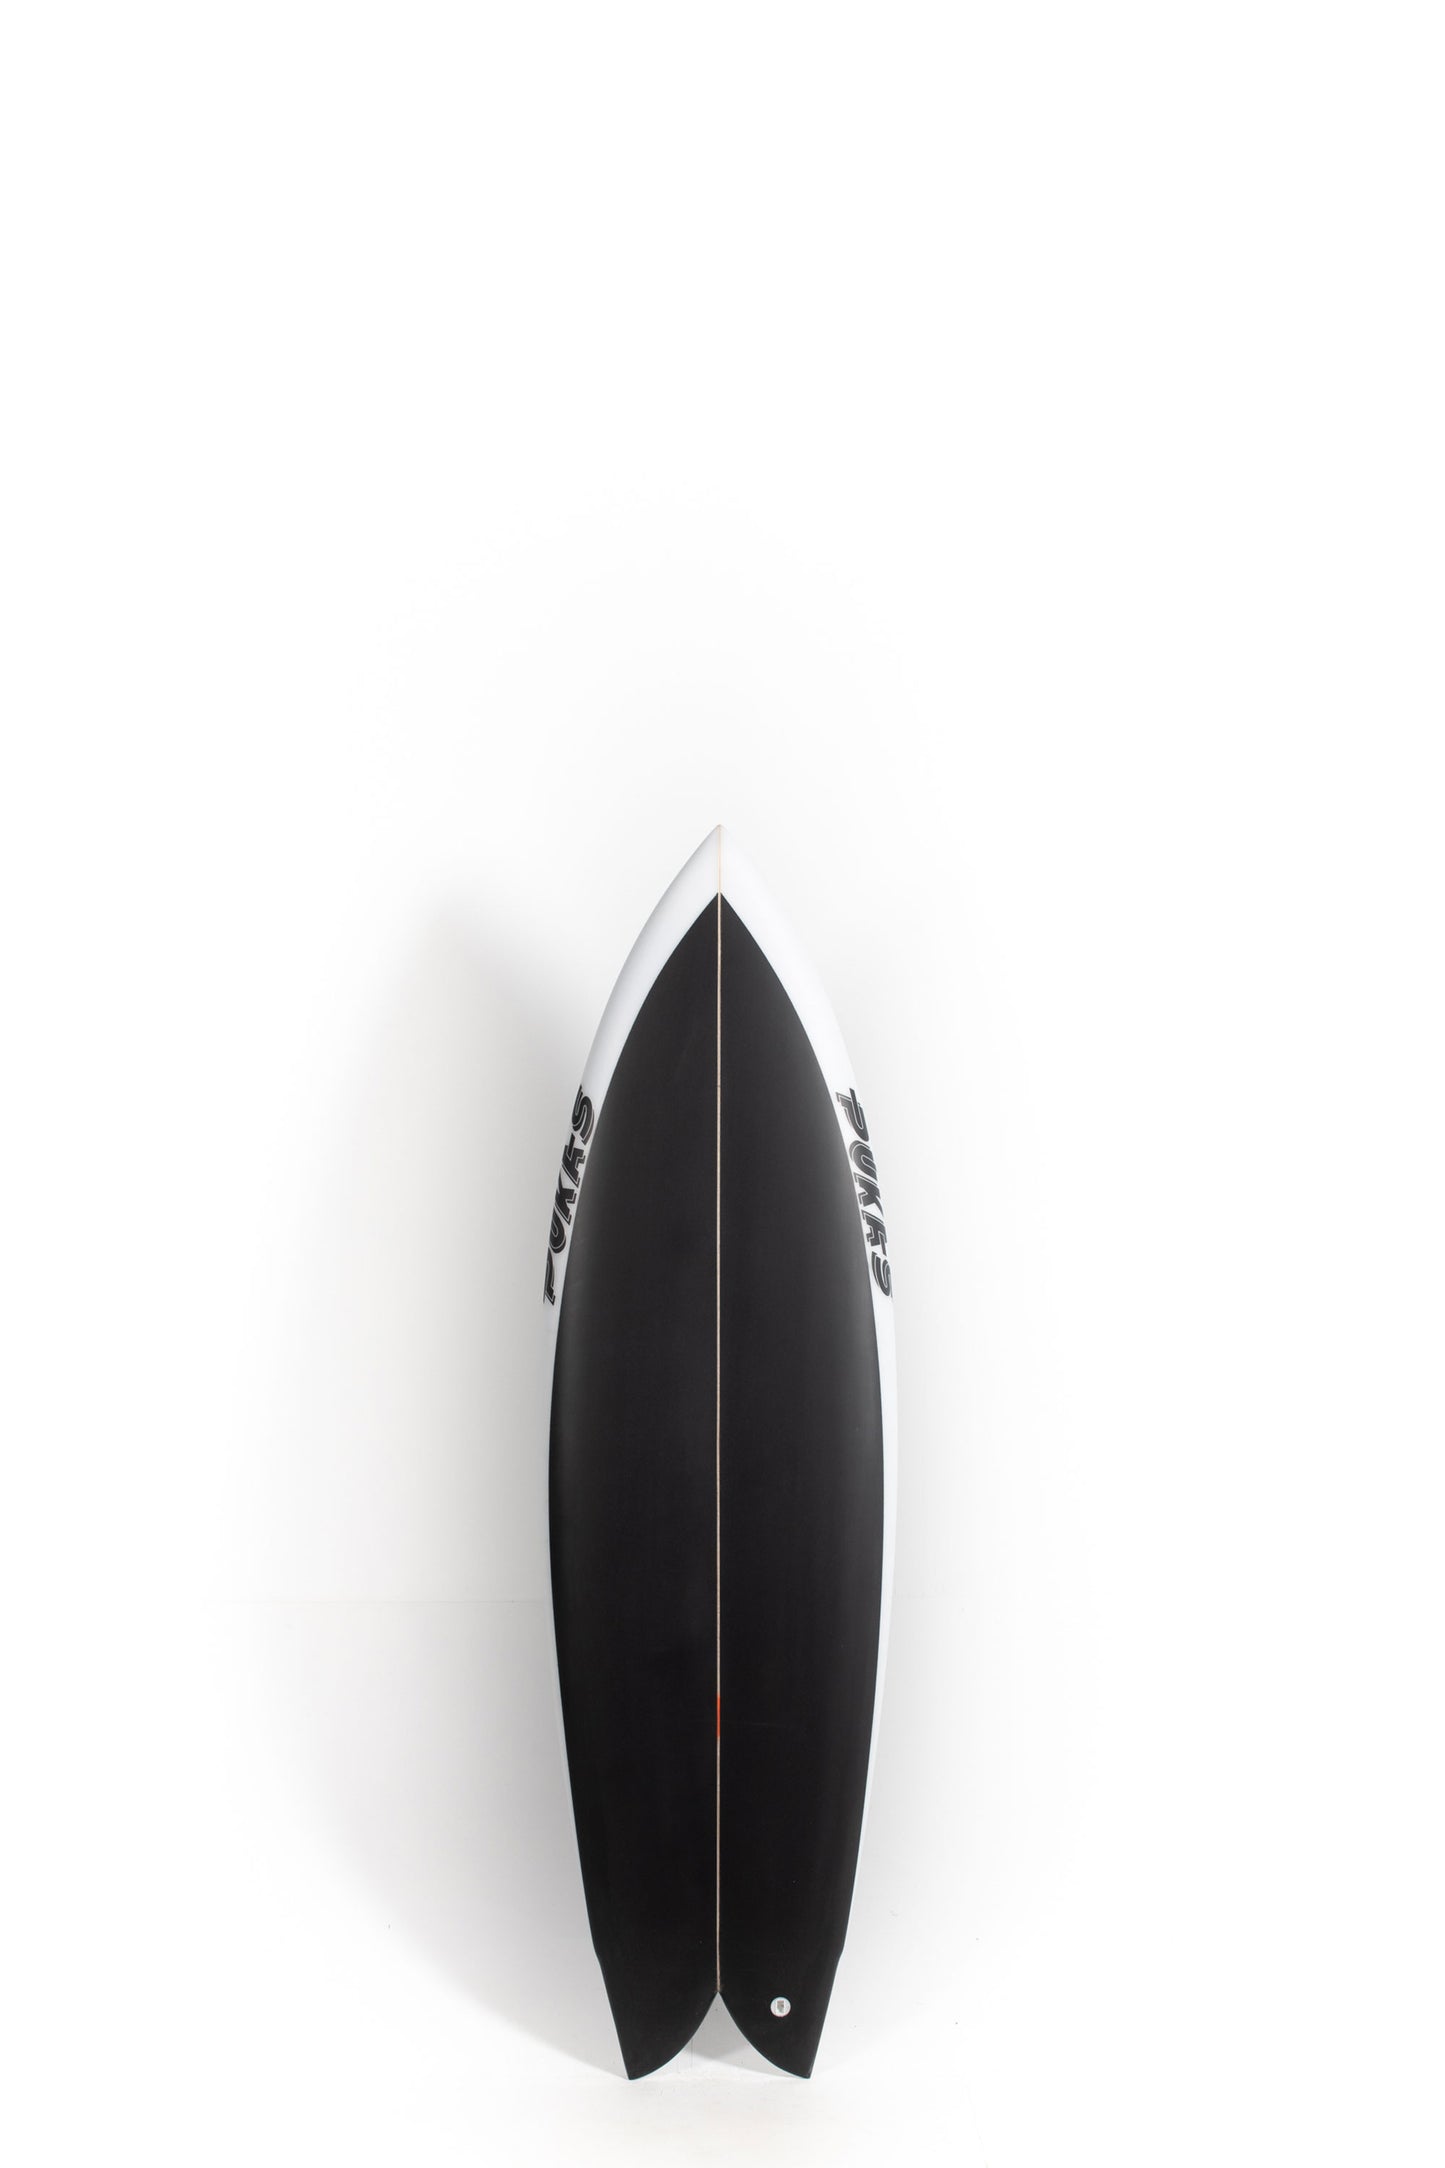 Pukas Surfboard - PEGASO by Chris Christenson - 5´6” x 19 x 2 7/16 